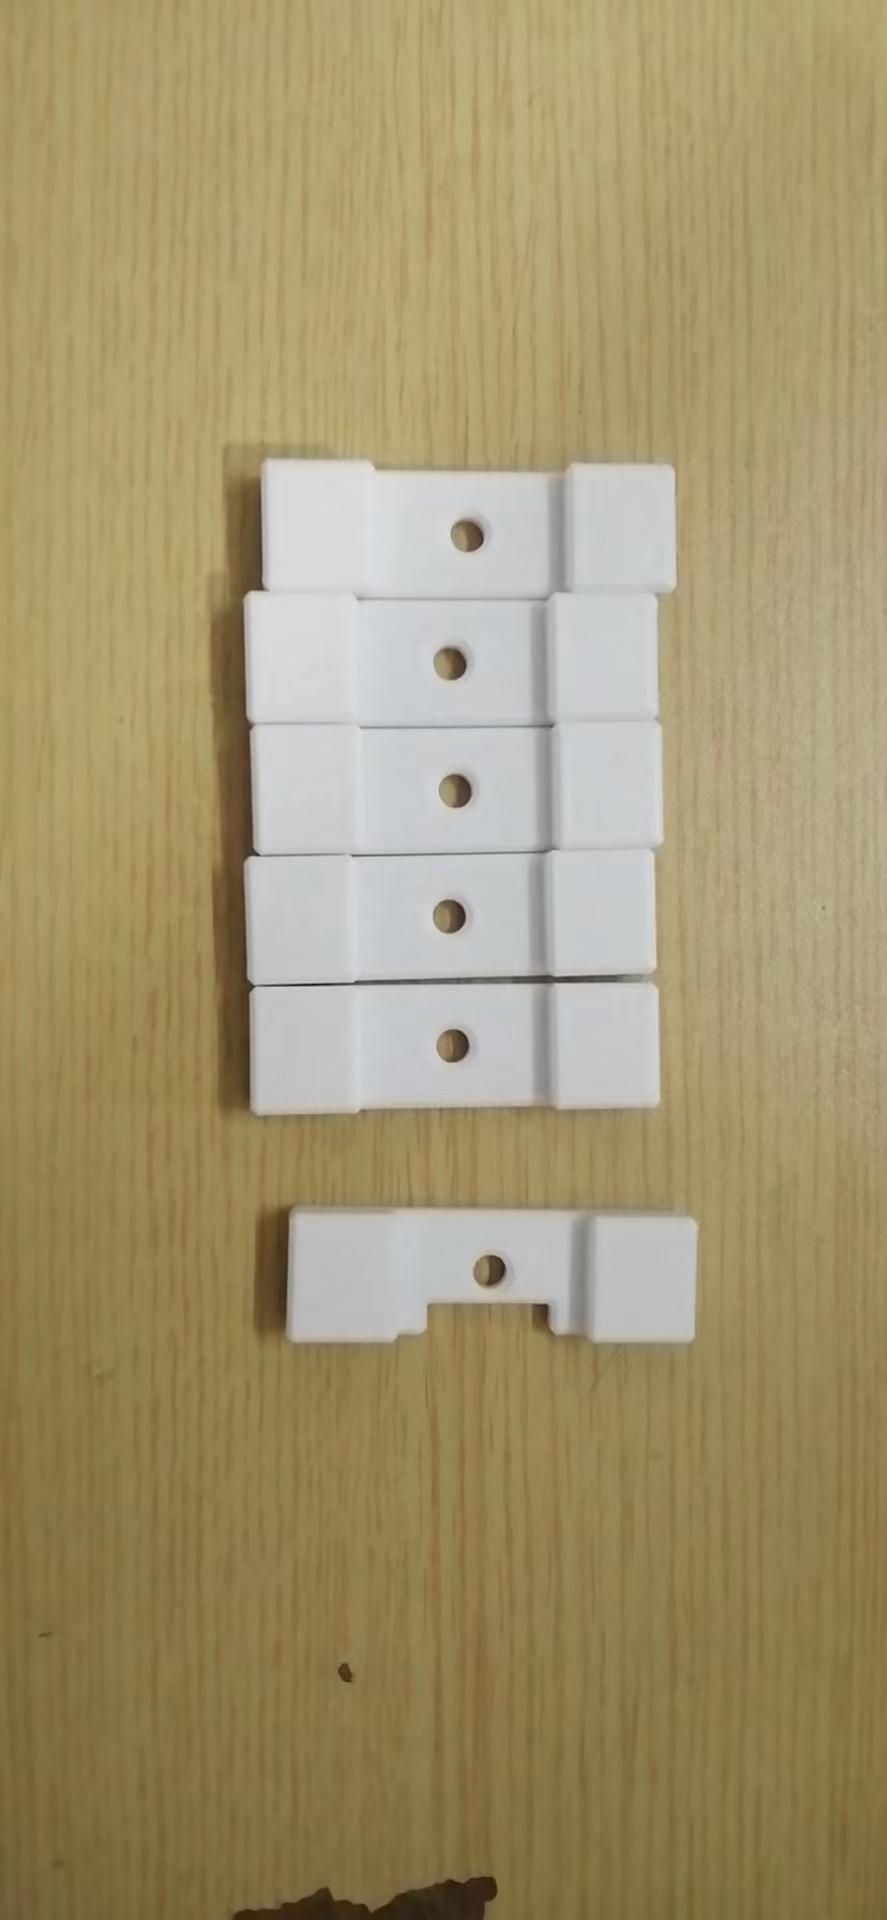 六片鲁班锁3D打印模型